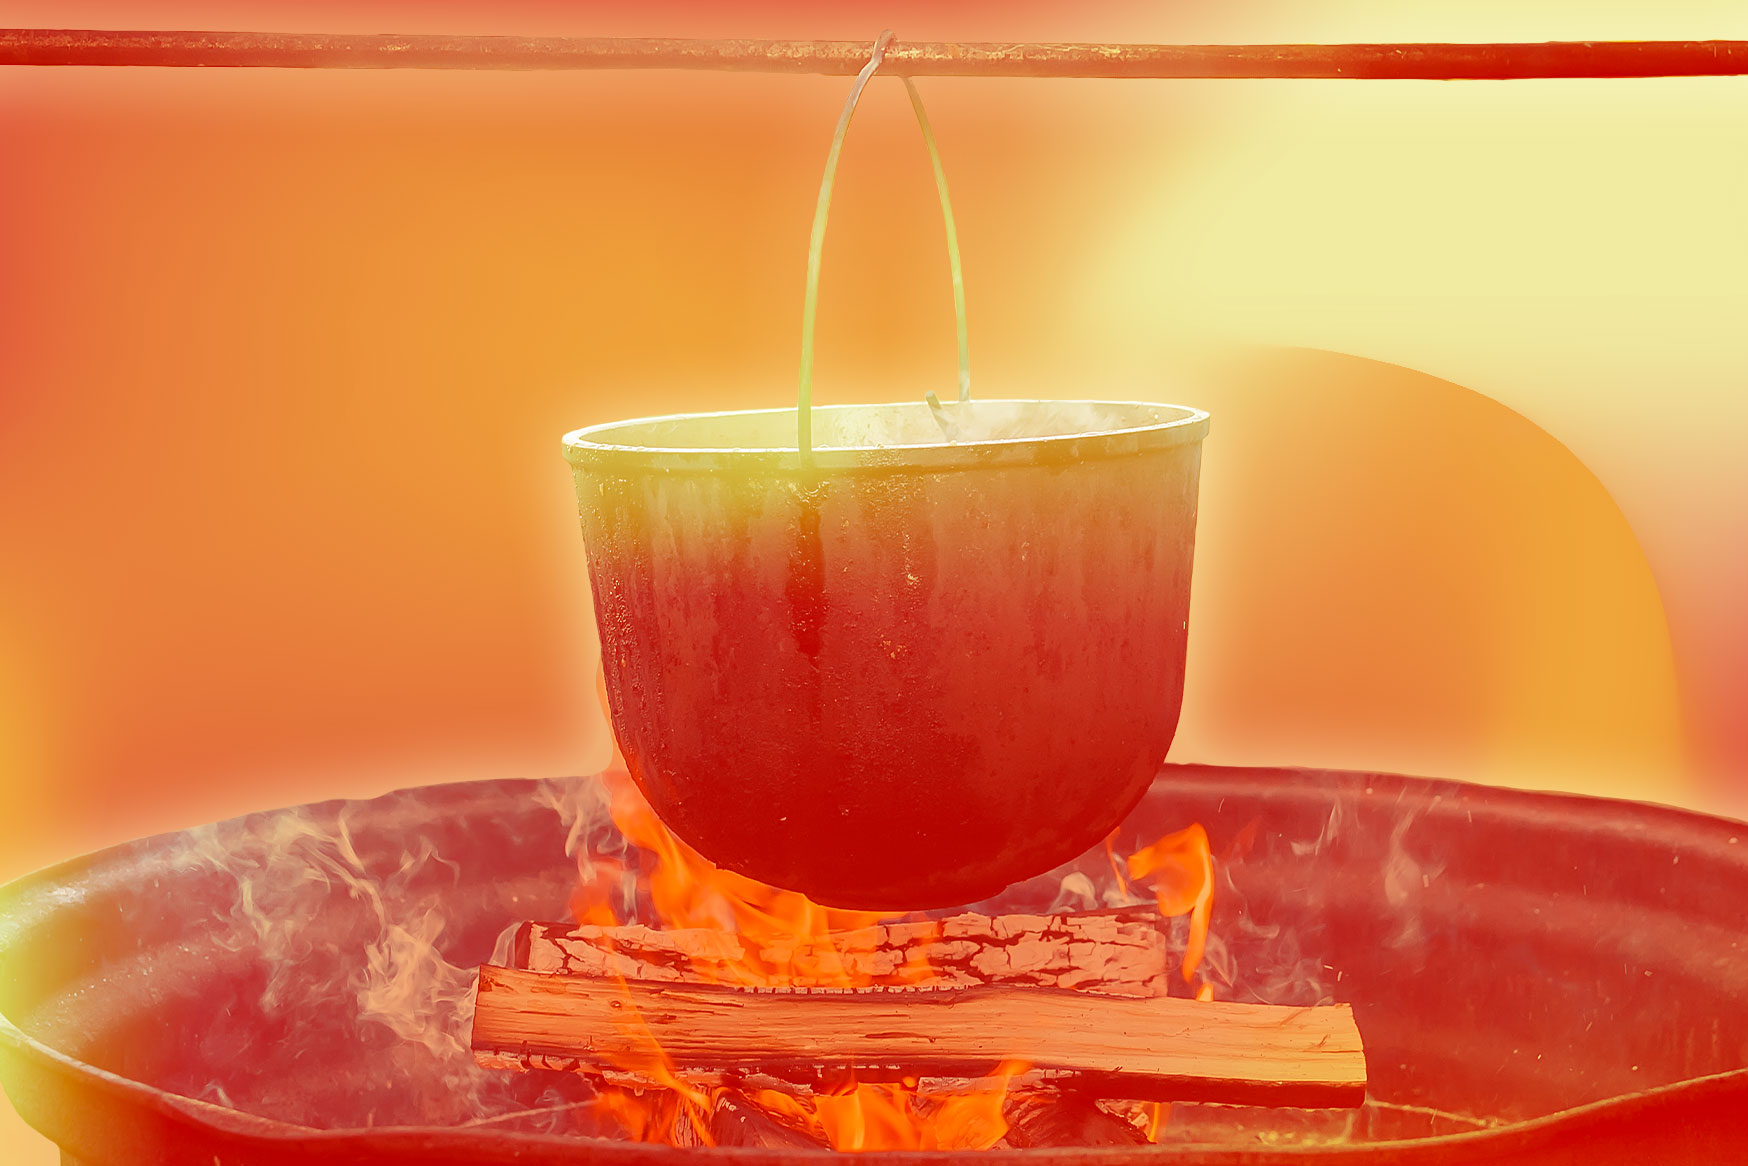 An iron pot on a spit above a cooking fire.